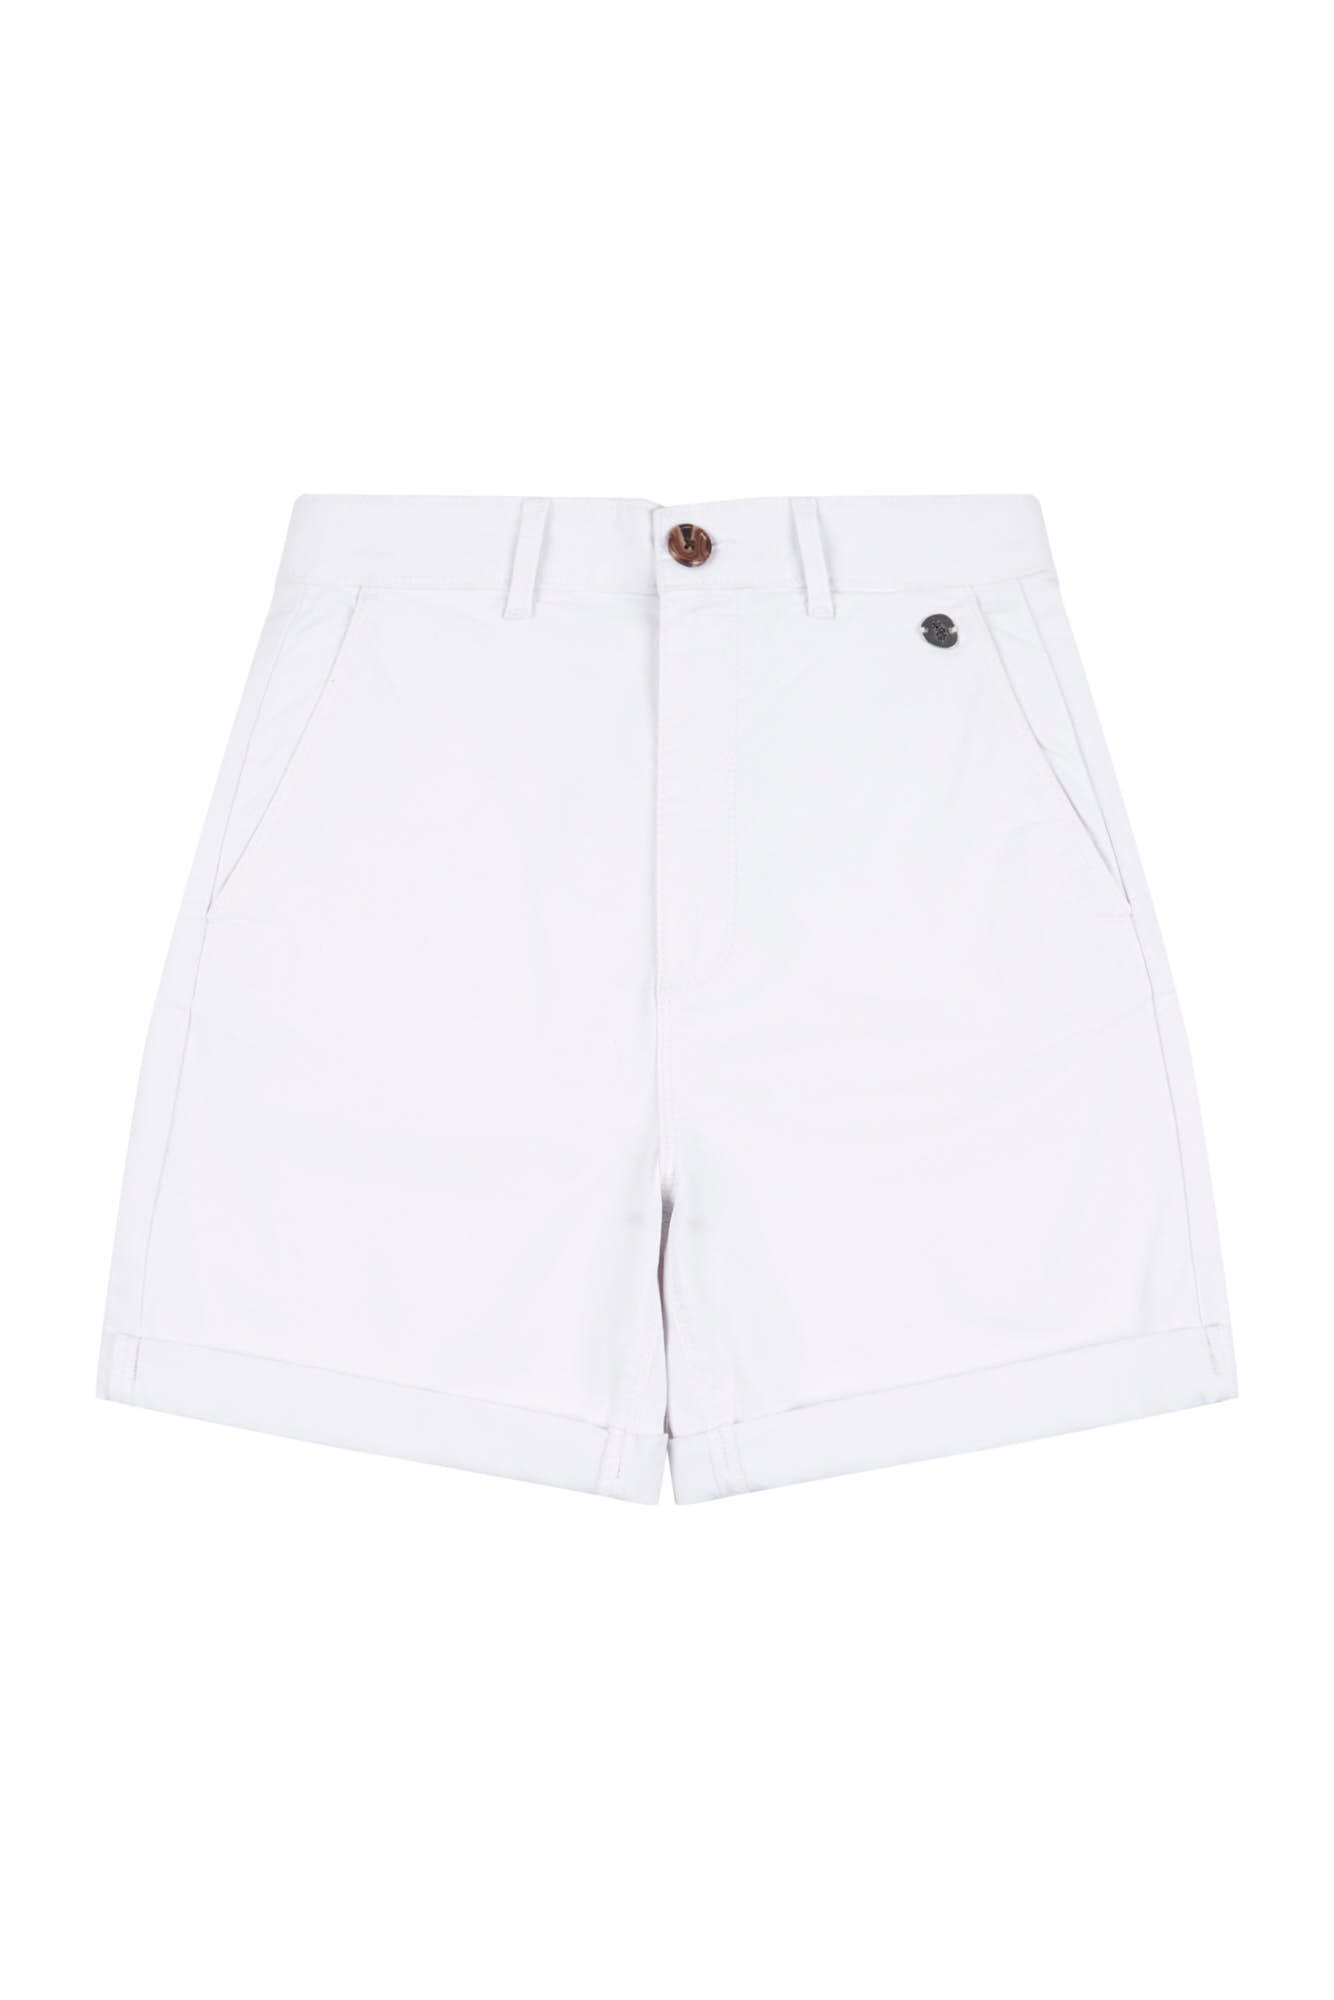 Womens Classic Chino Shorts in Bright White